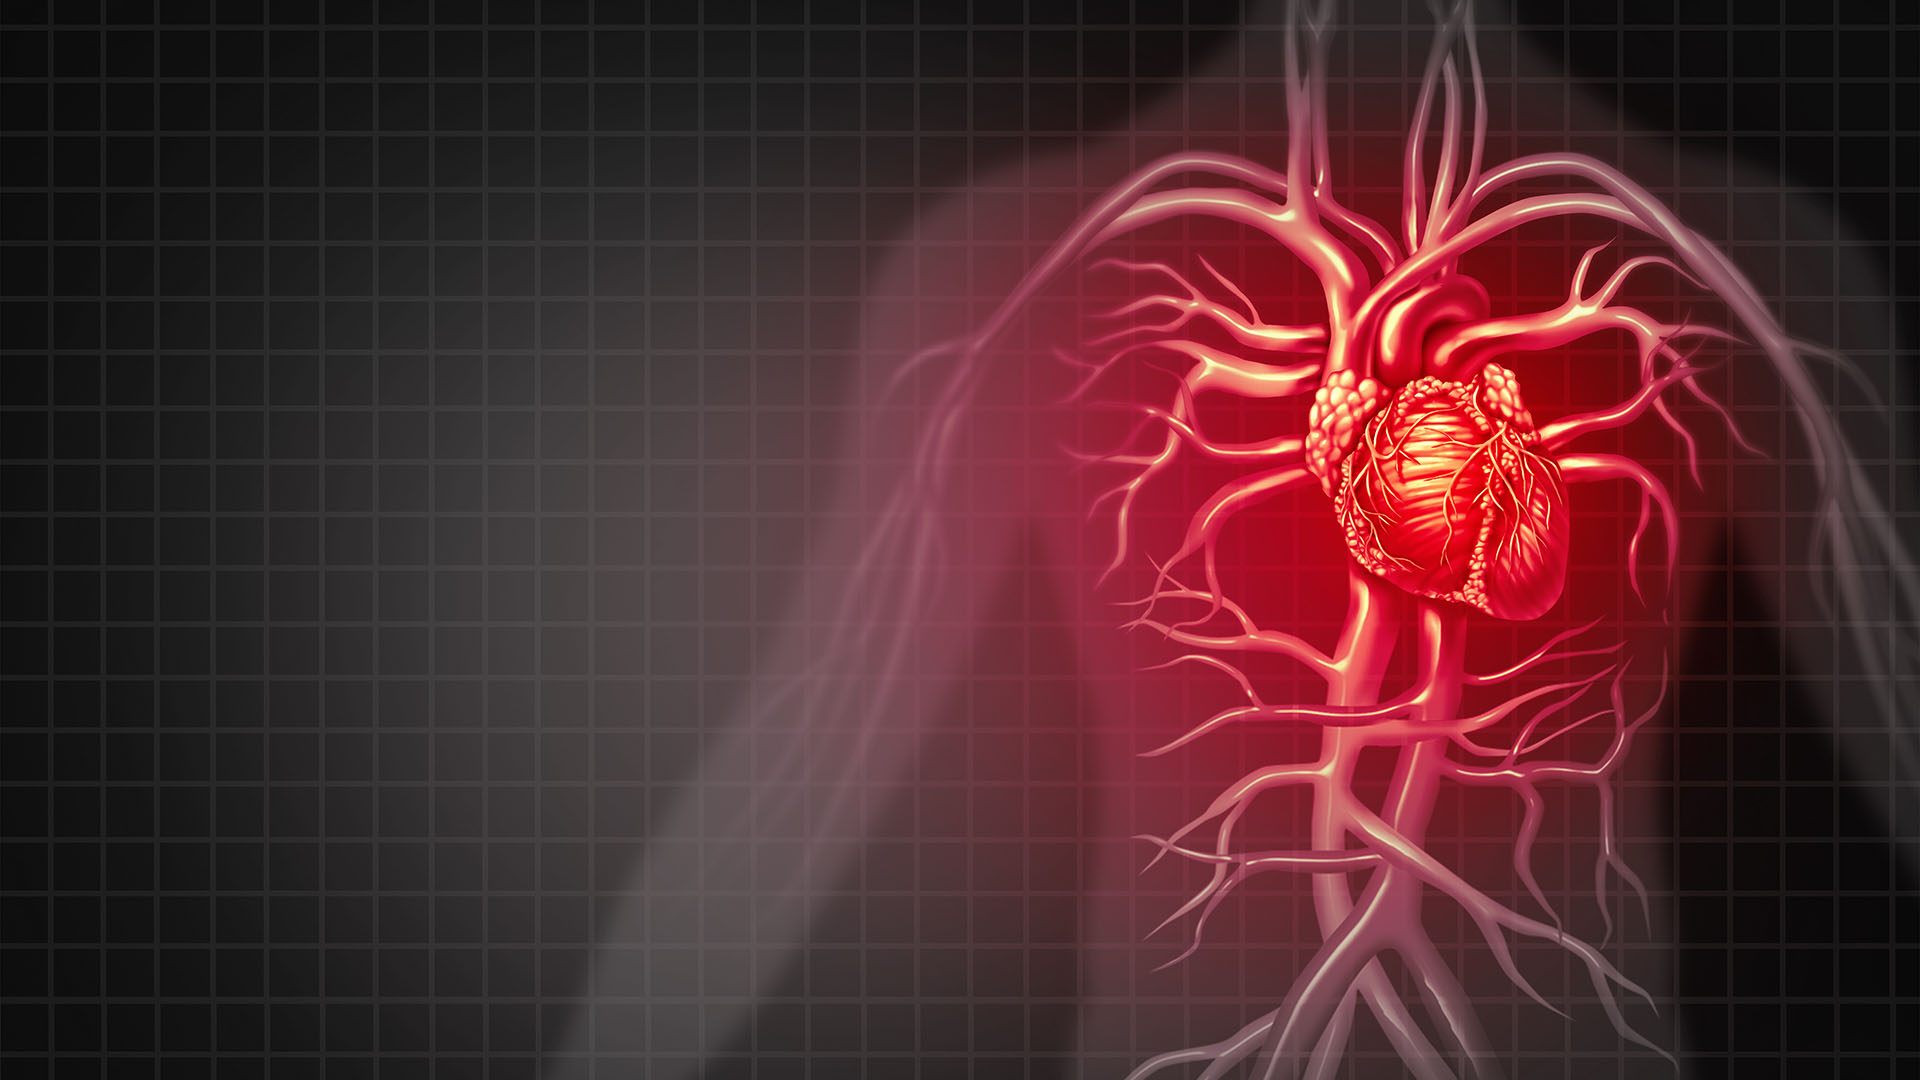 Dolor cardíaco: cuáles son las diferencias entre los hombres y las mujeres